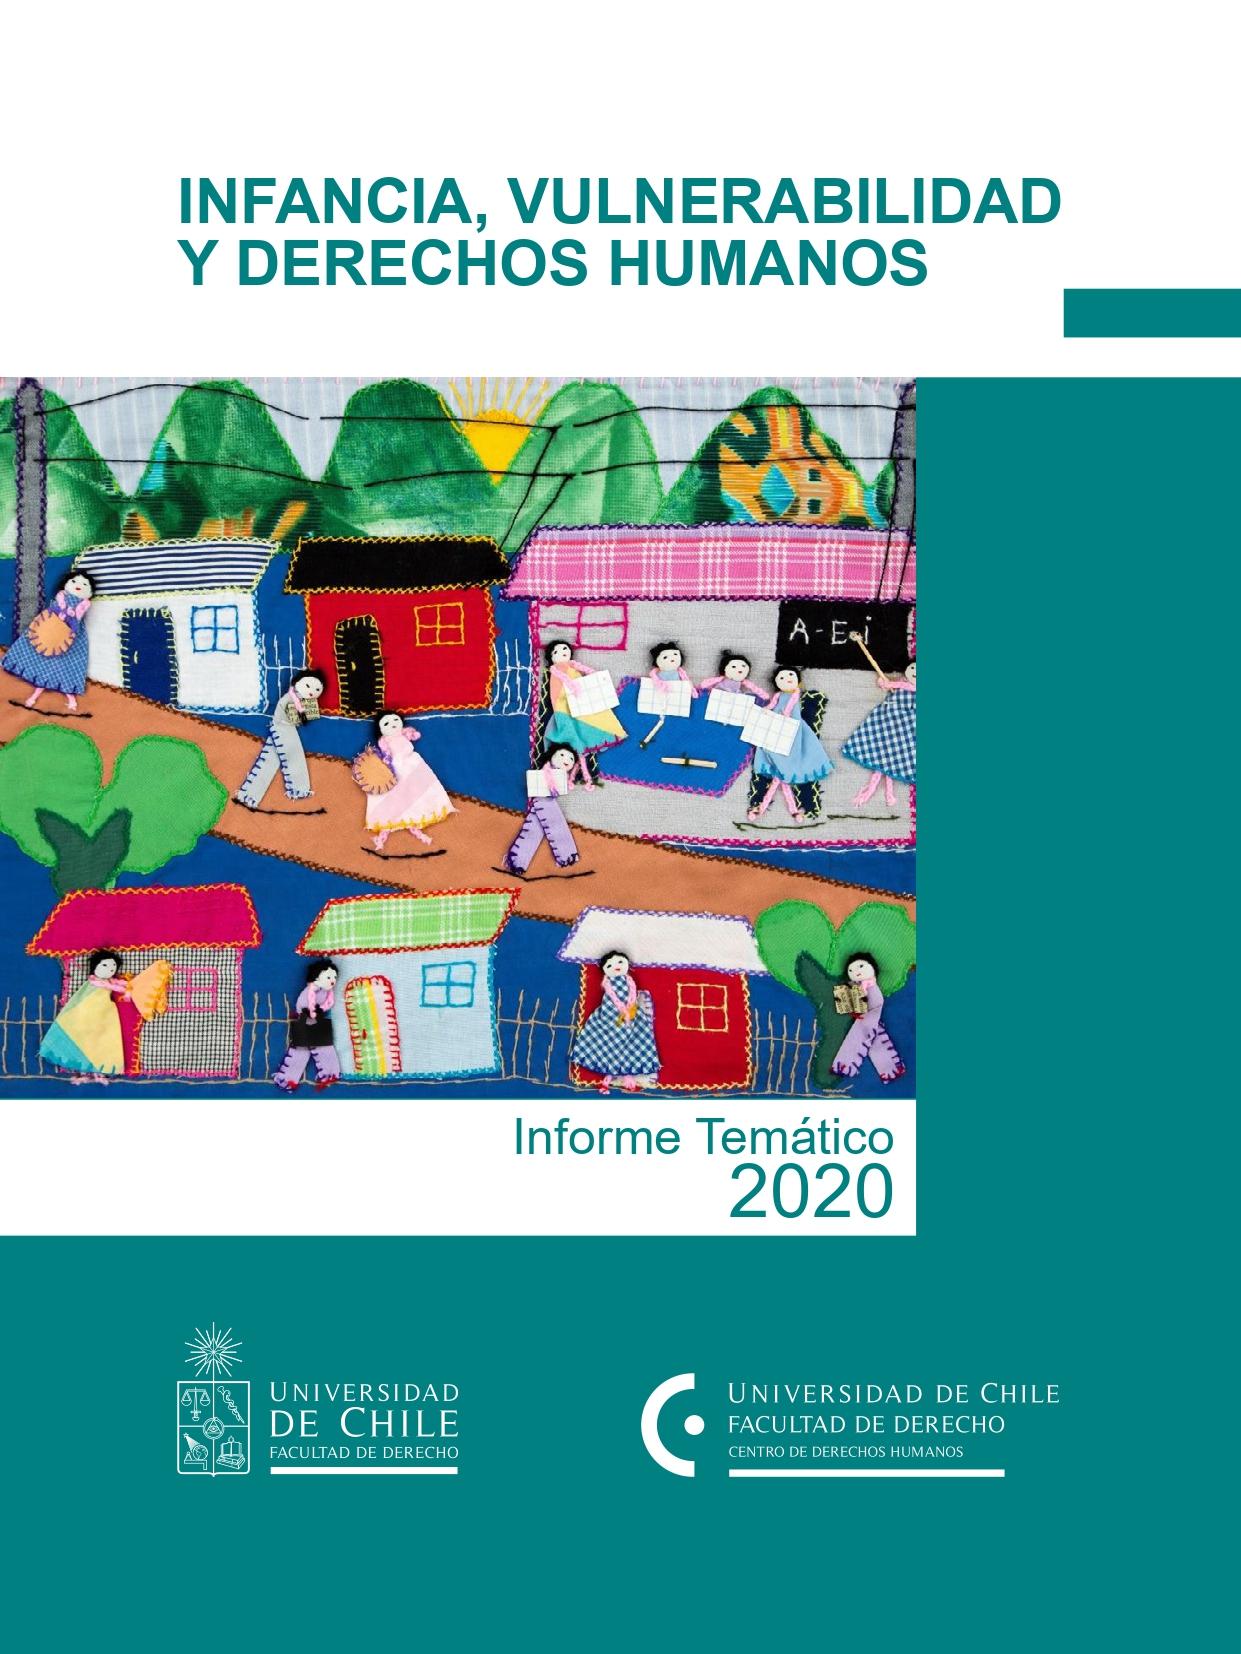 Informe temático: Infancia, vulnerabilidad y derechos humanos